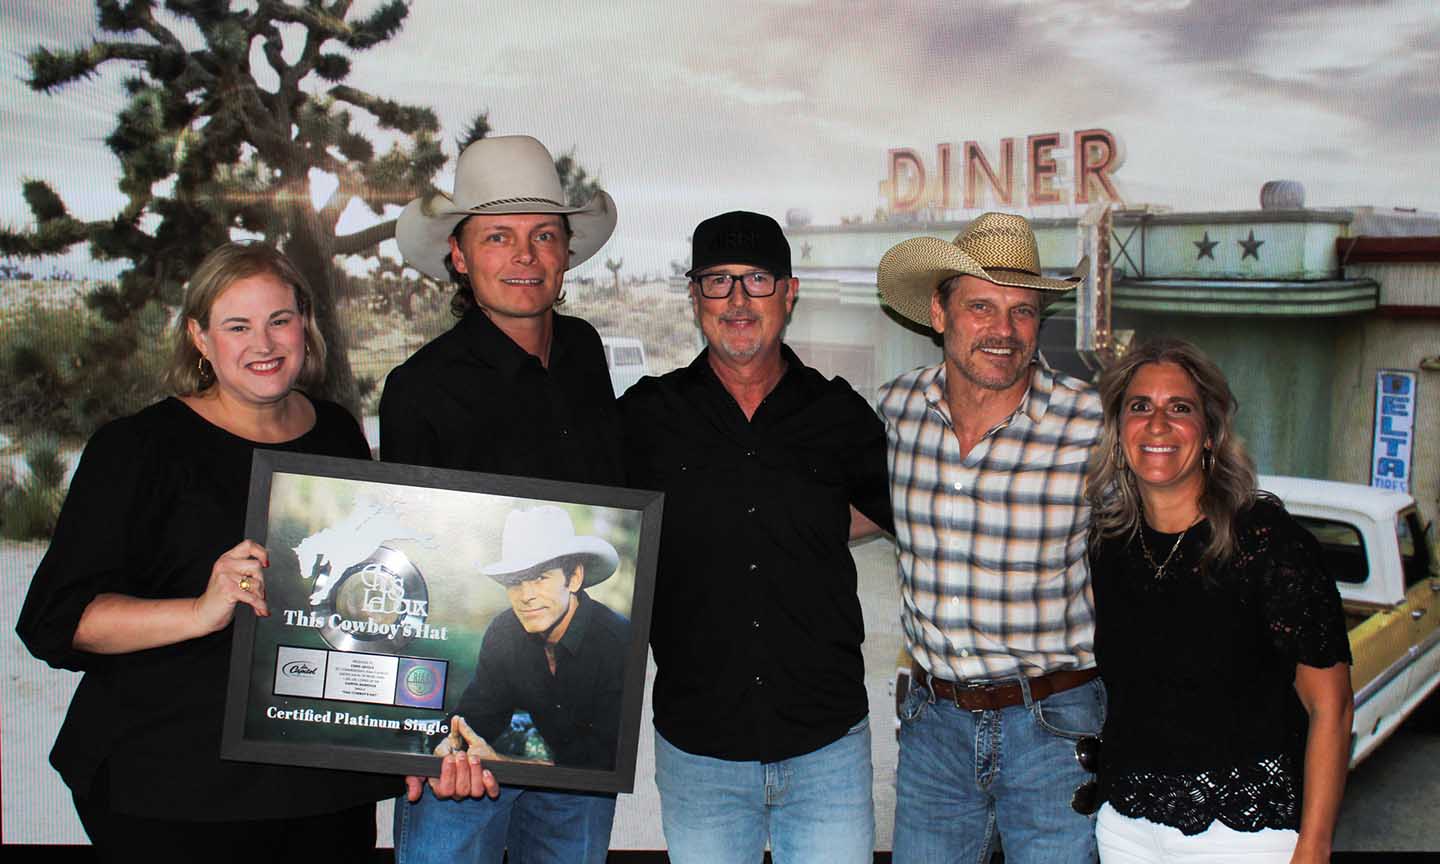 “This Cowboy’s Hat” by Chris LeDoux receives platinum certification